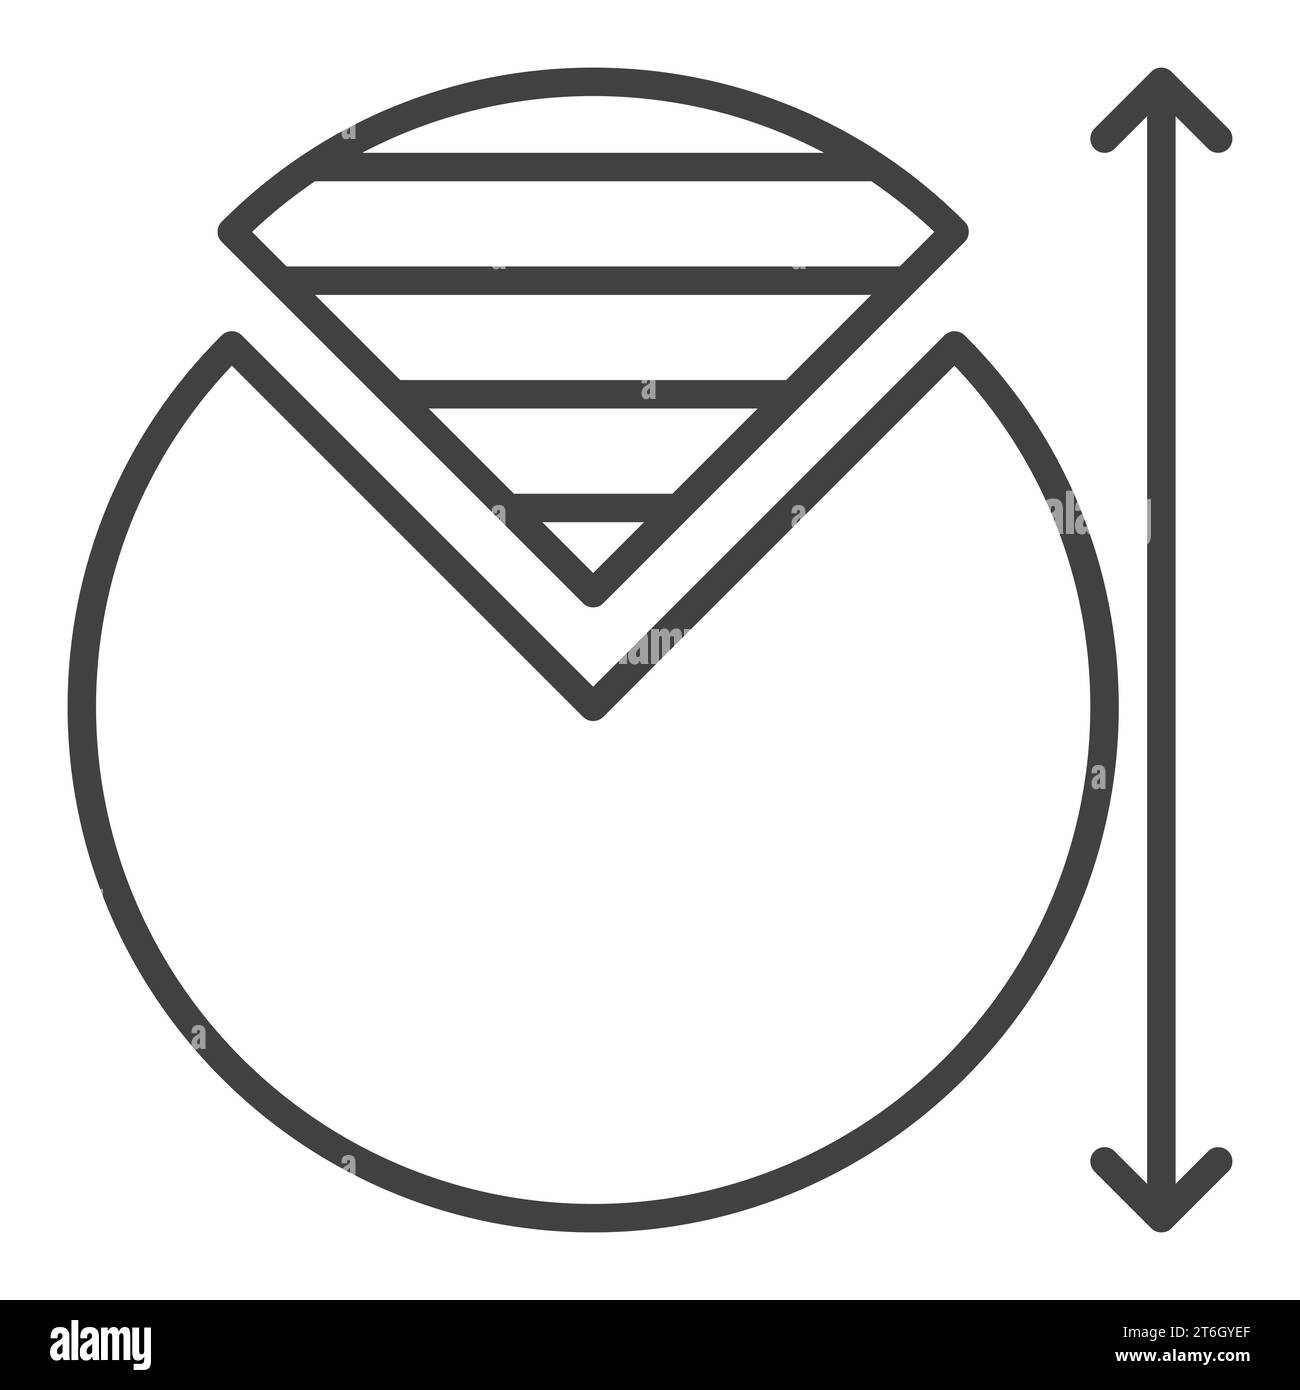 Icona o simbolo lineare del concetto matematico del cerchio matematico Illustrazione Vettoriale